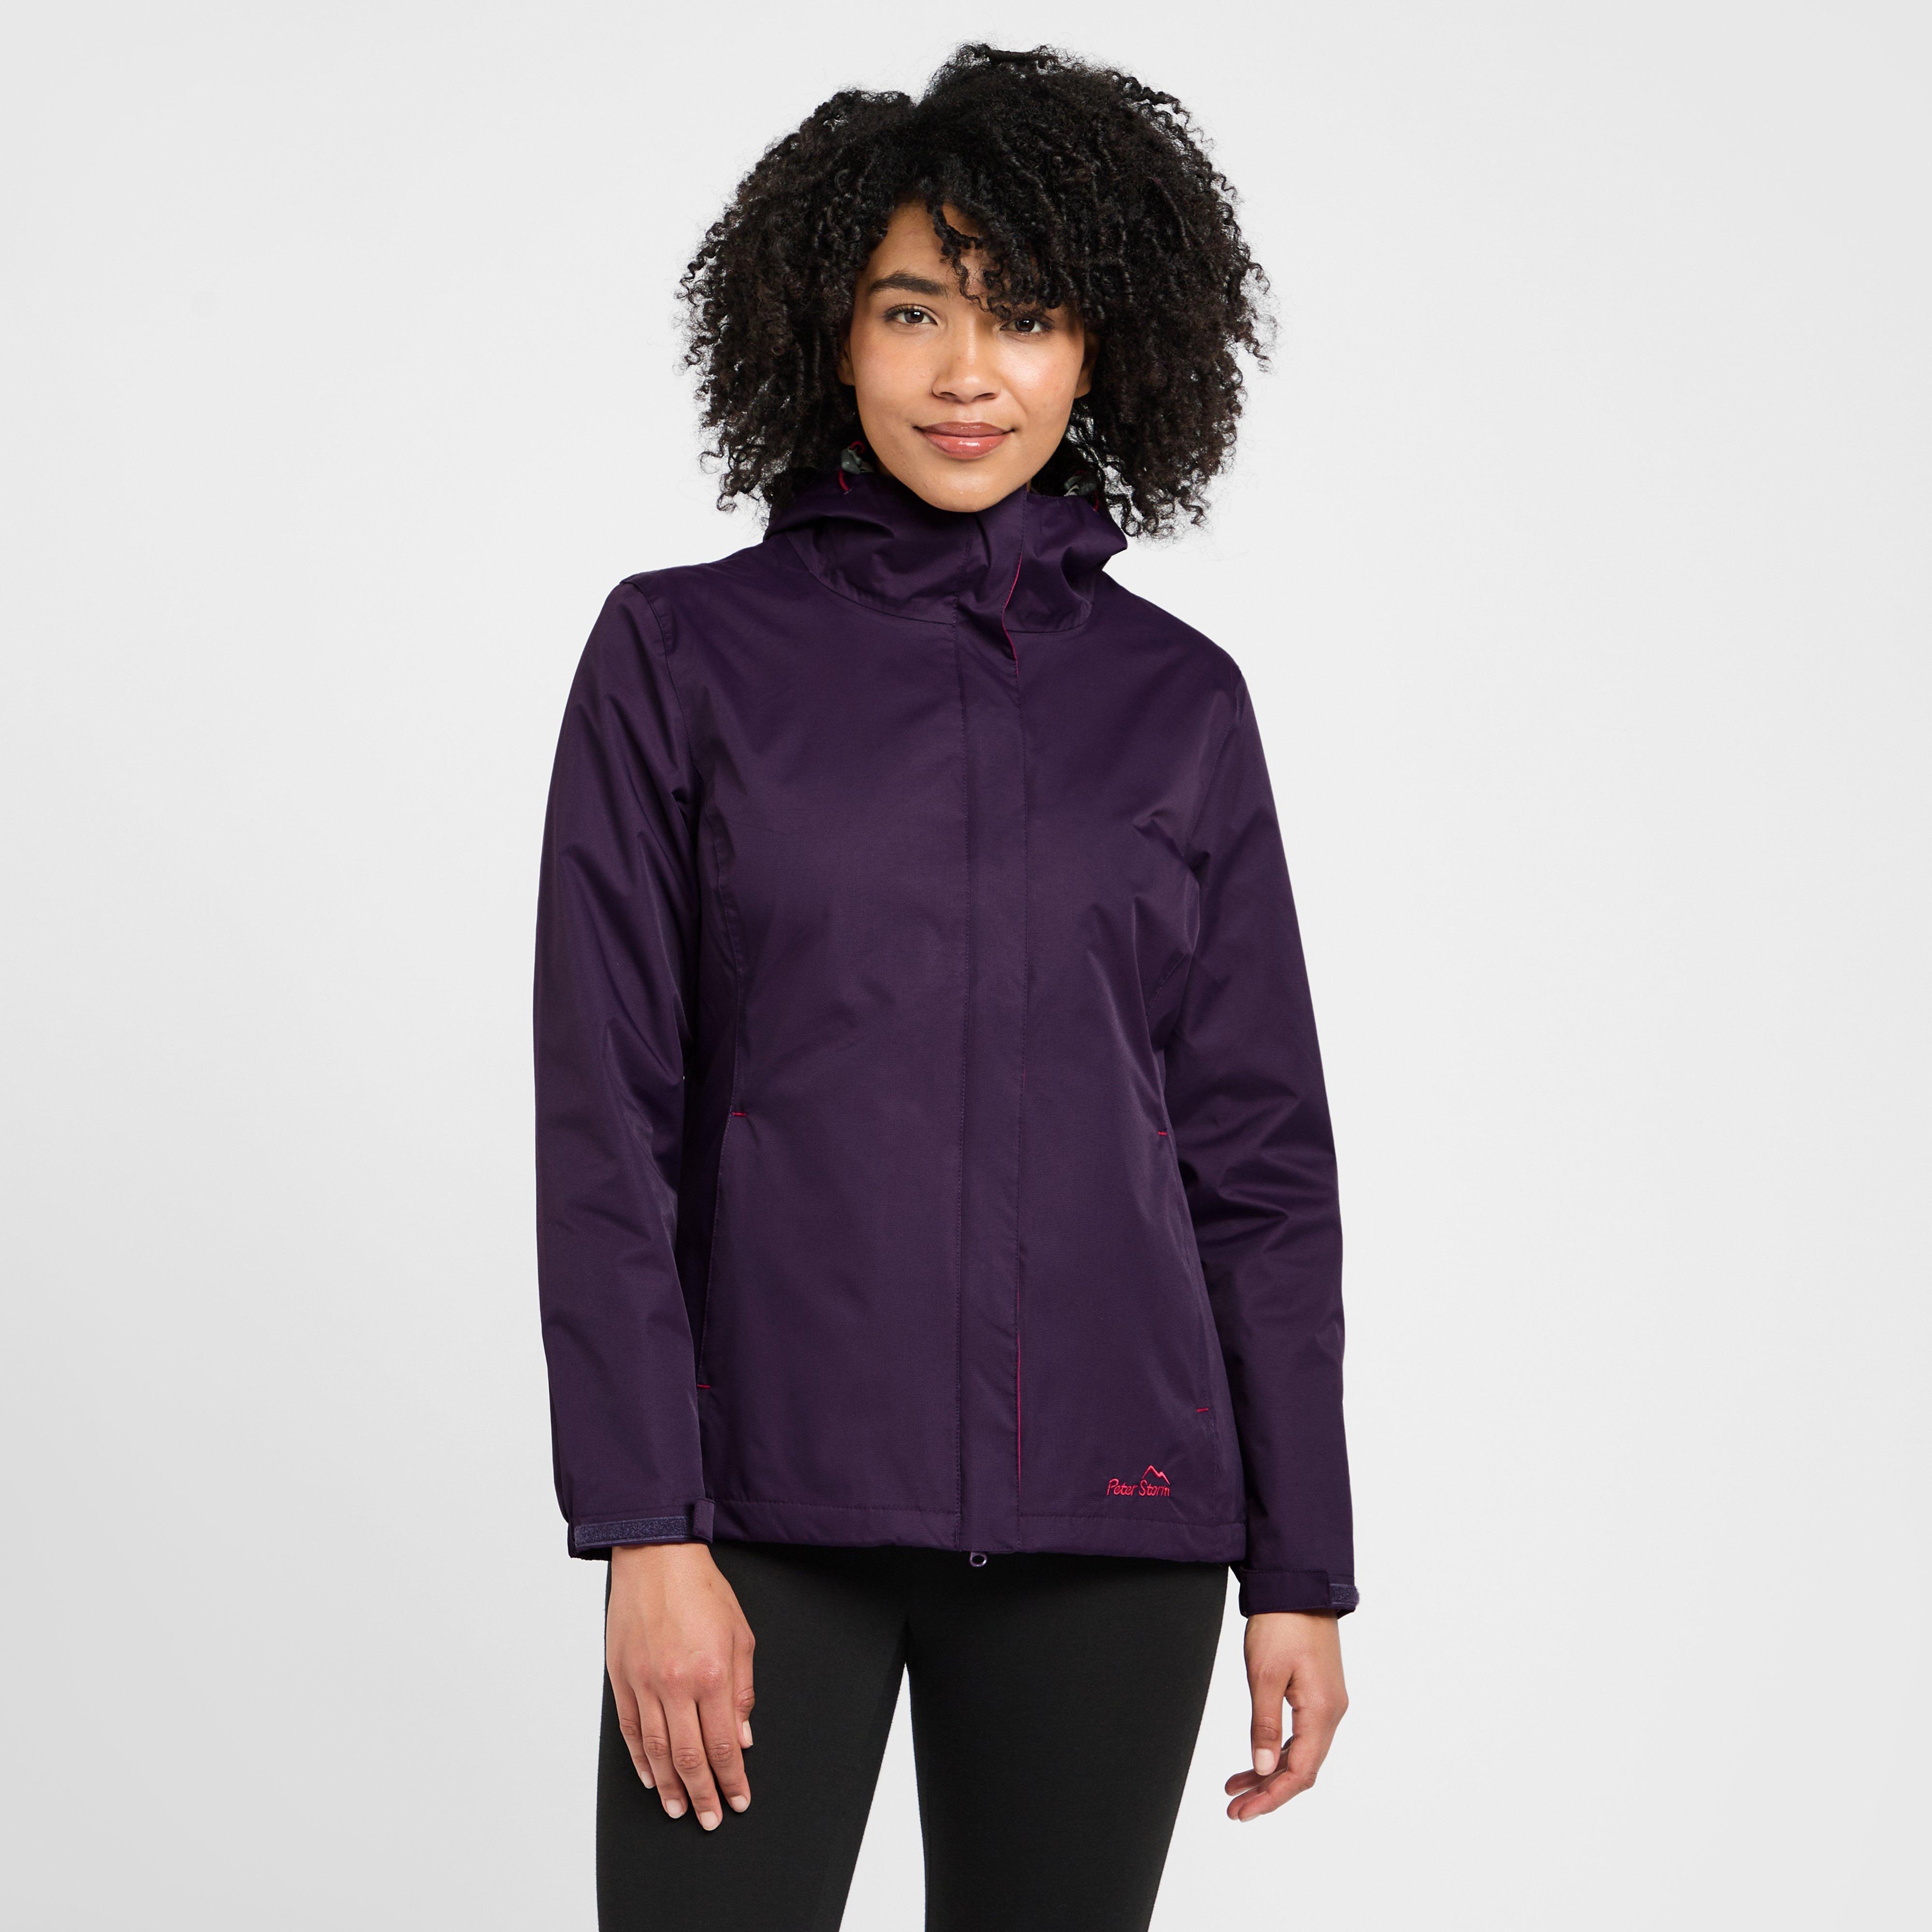 Peter Storm Women's Storm Waterproof Jacket, Purple